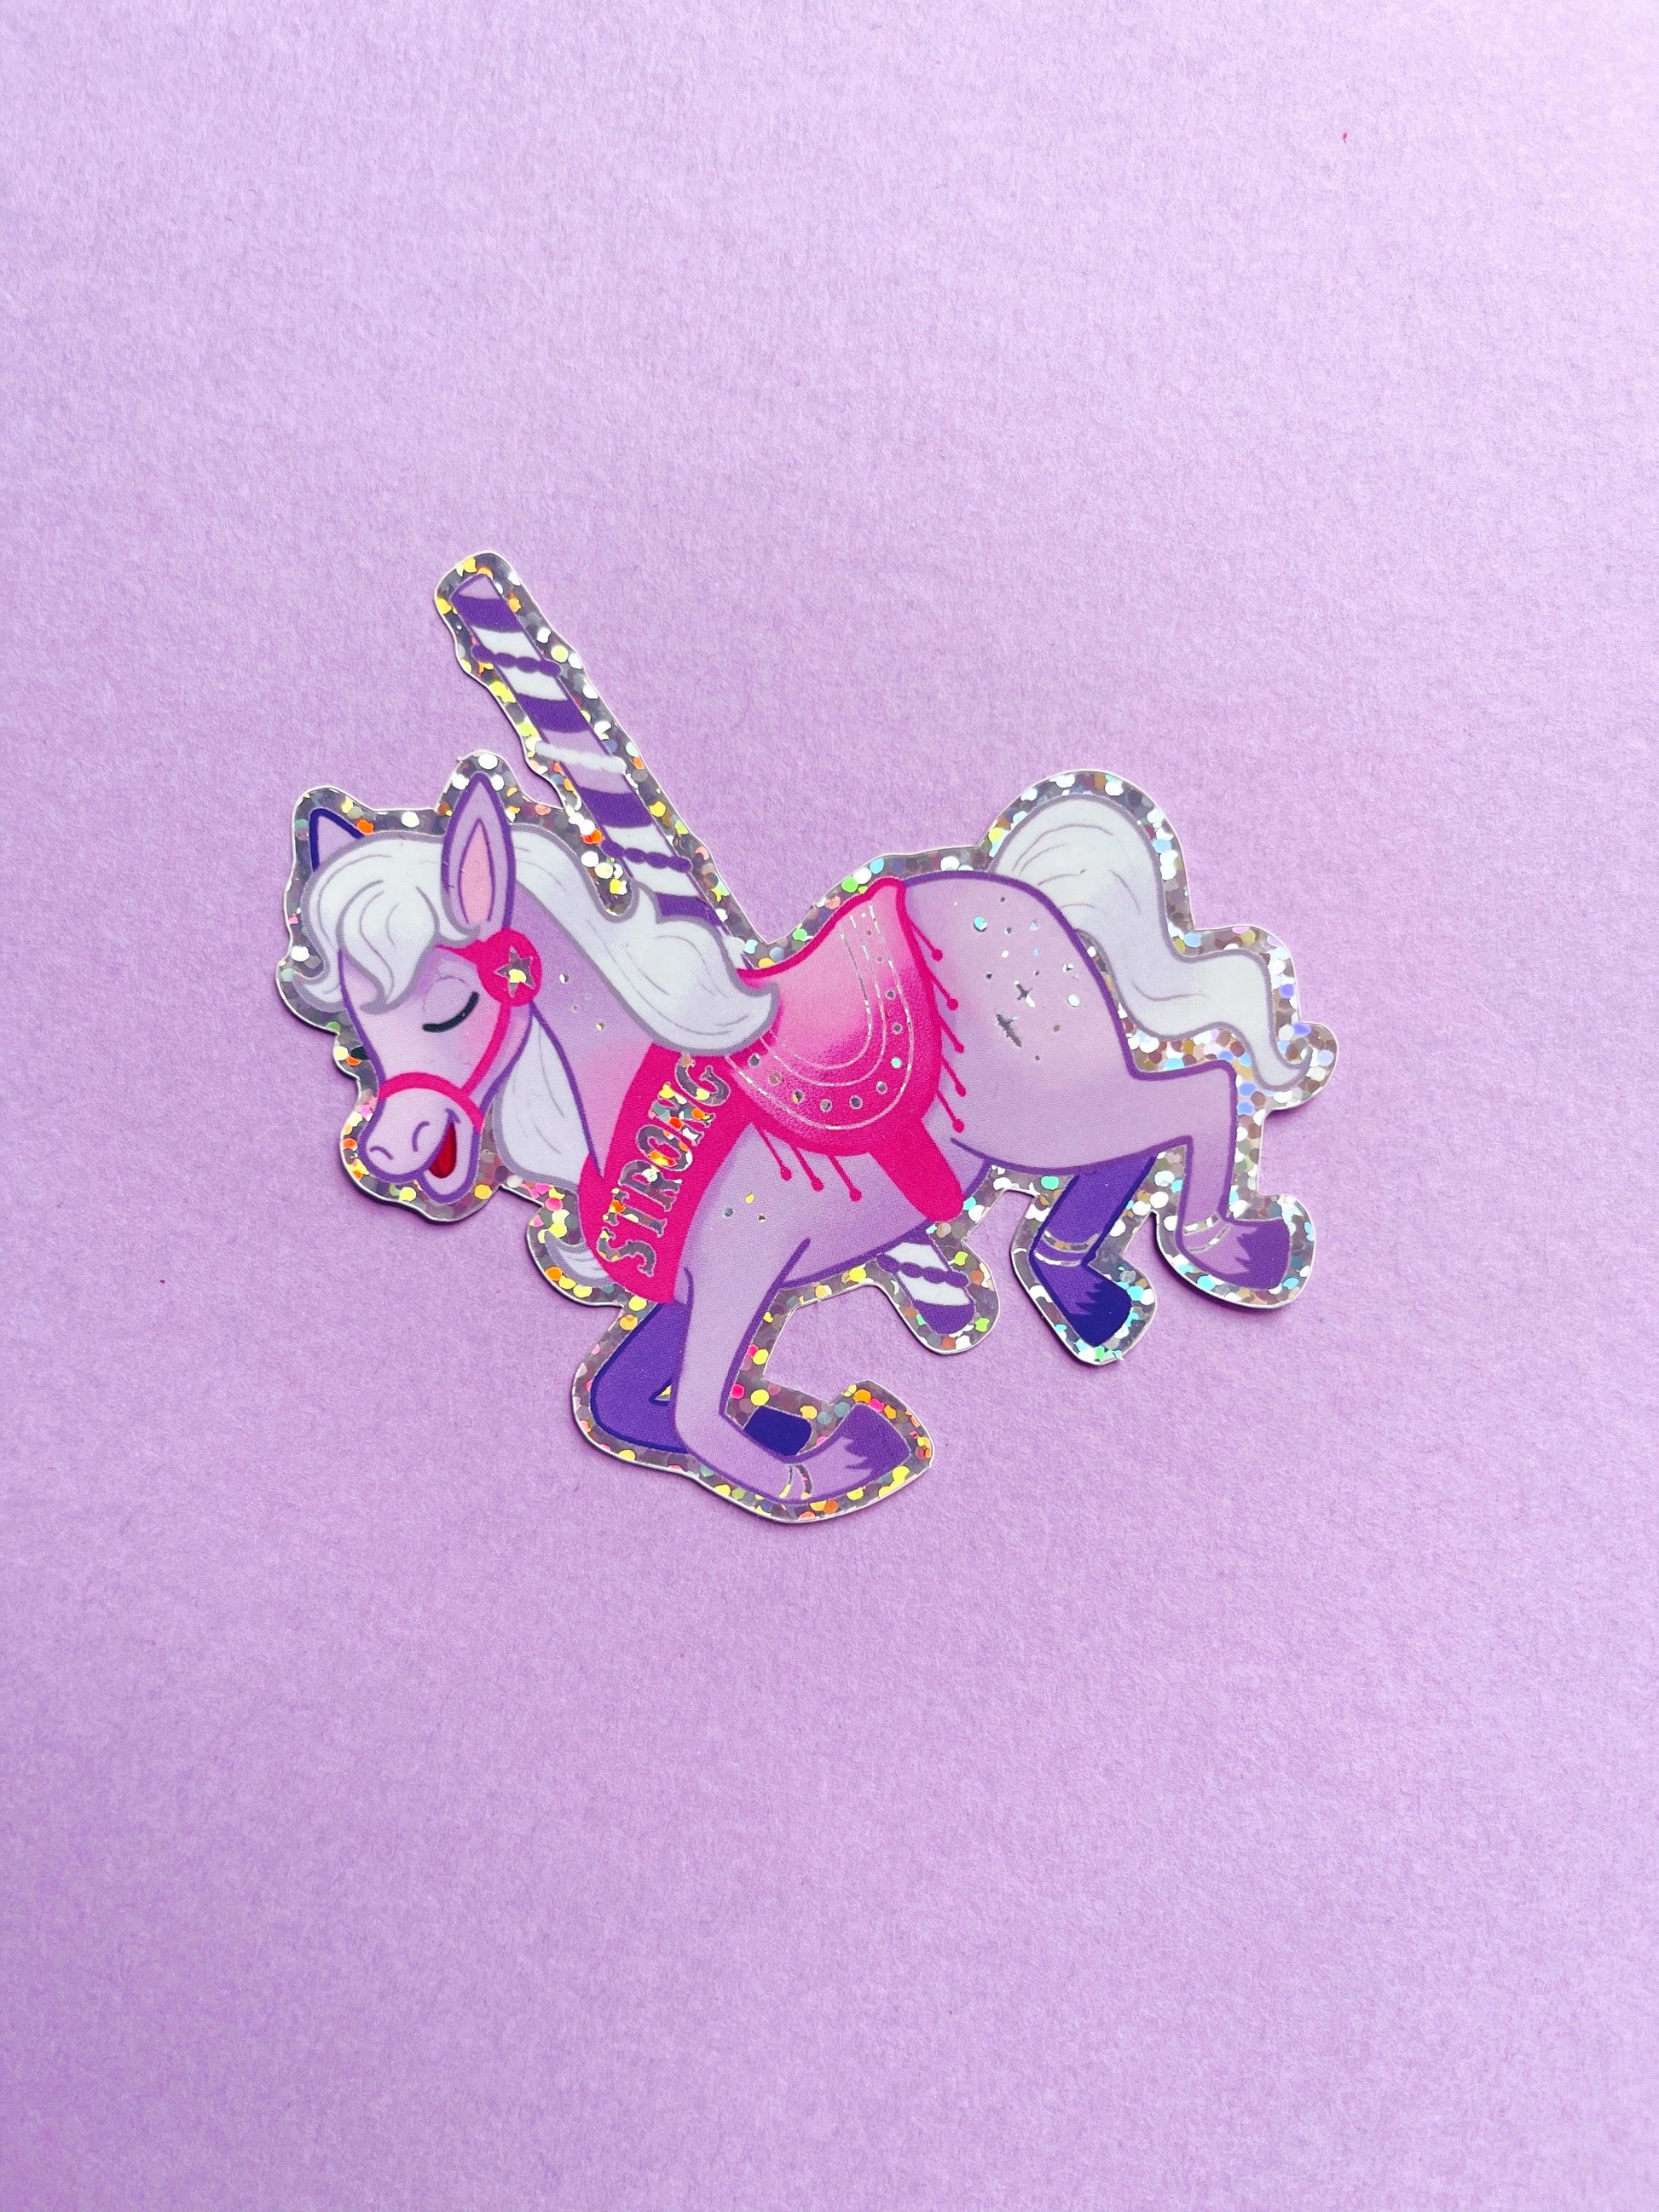 Strong Carousel Horse Glitter Vinyl Sticker - Emily Harvey Art